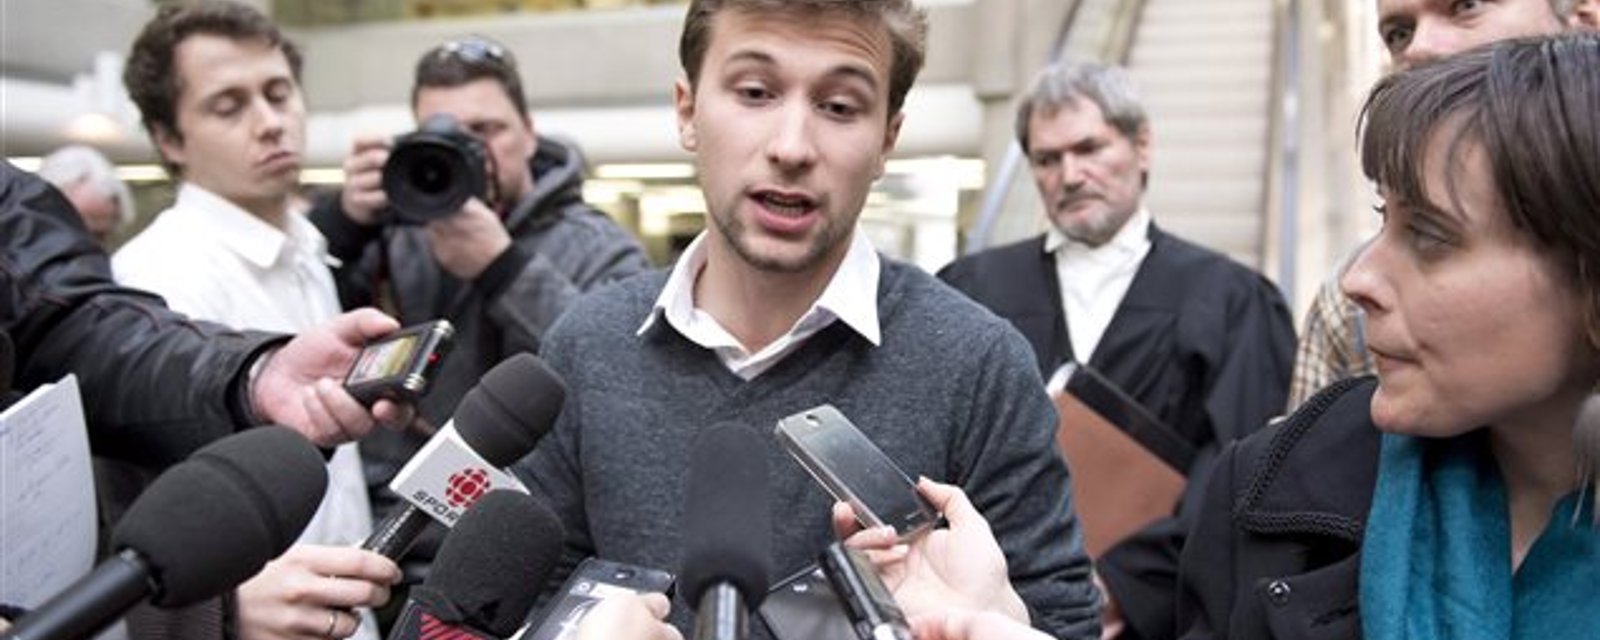 Une populaire personnalité québécoise annonce vouloir faire le saut en politique!